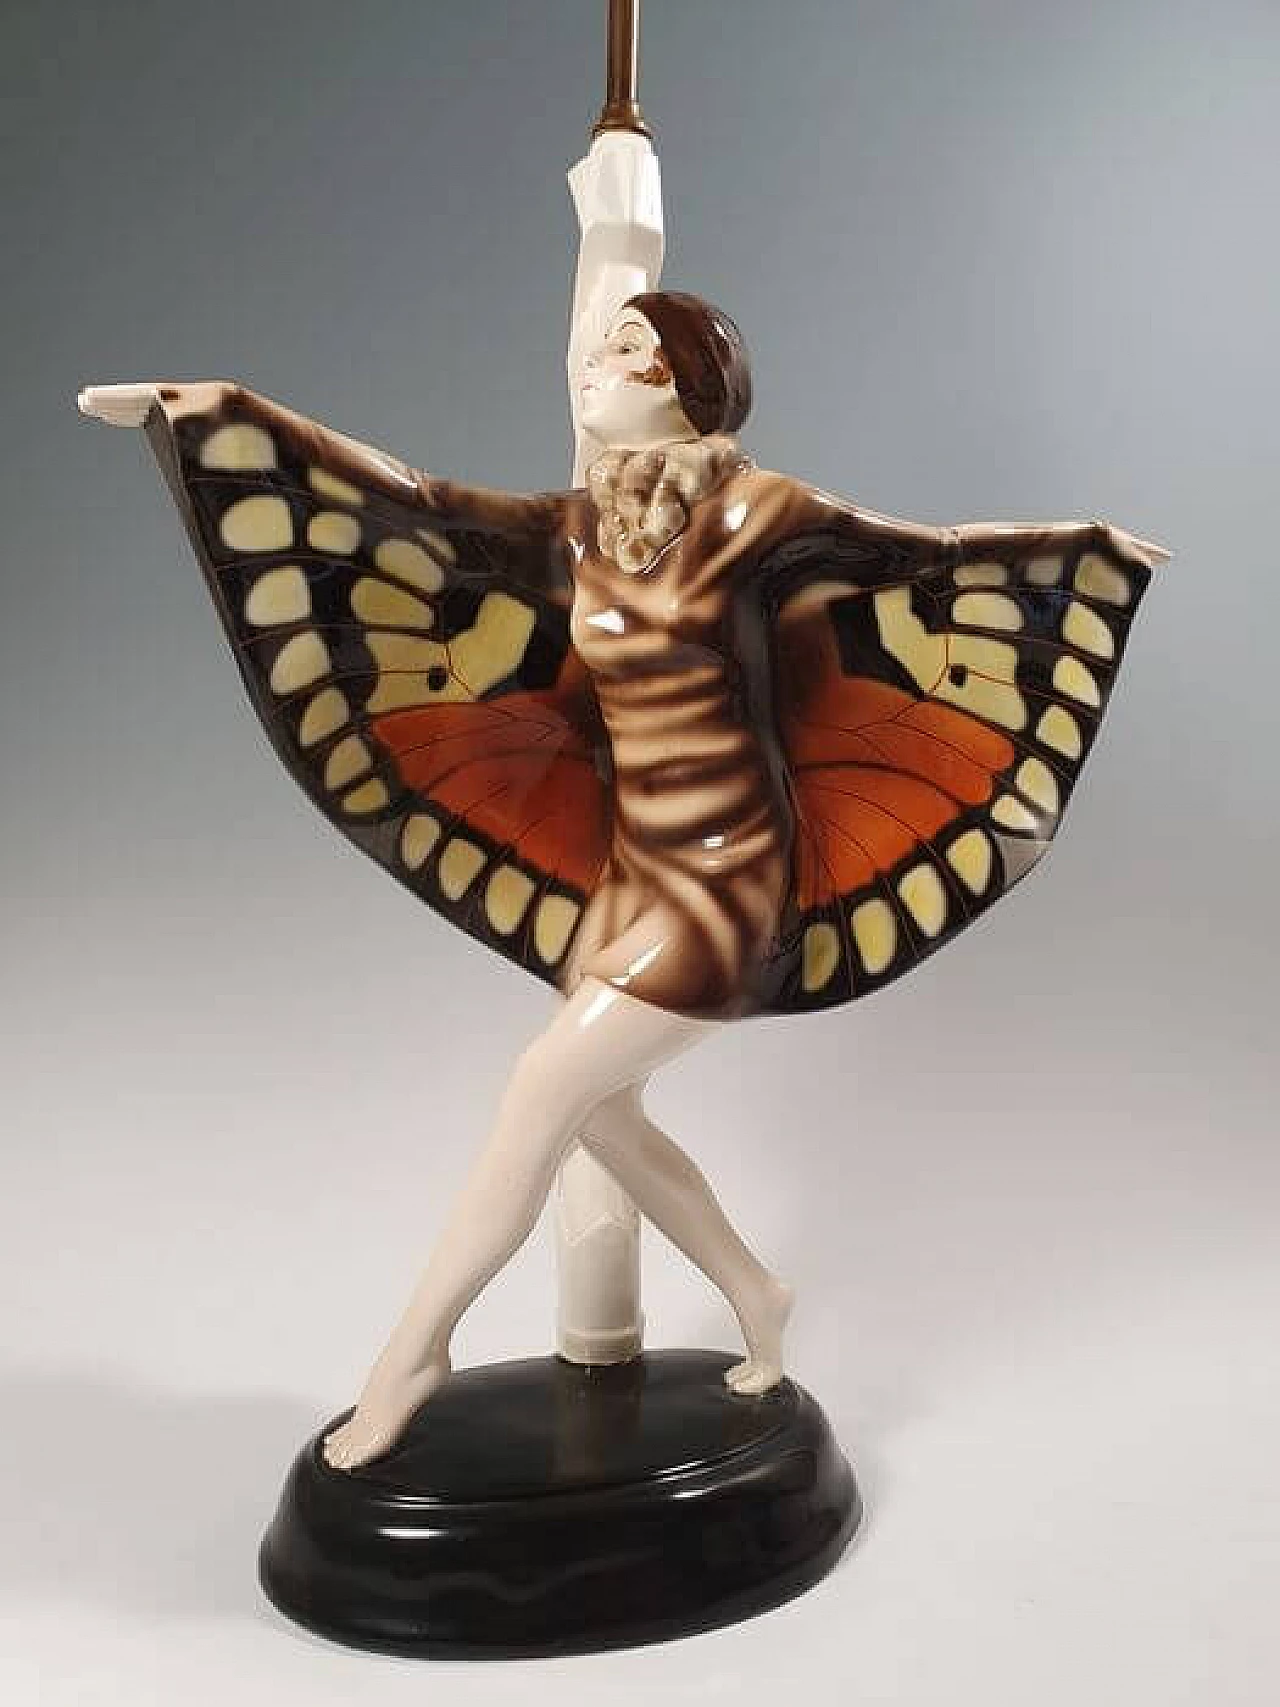 Lampada in ceramica Goldscheider a forma di ballerina firmata Lorenzi, '900 5